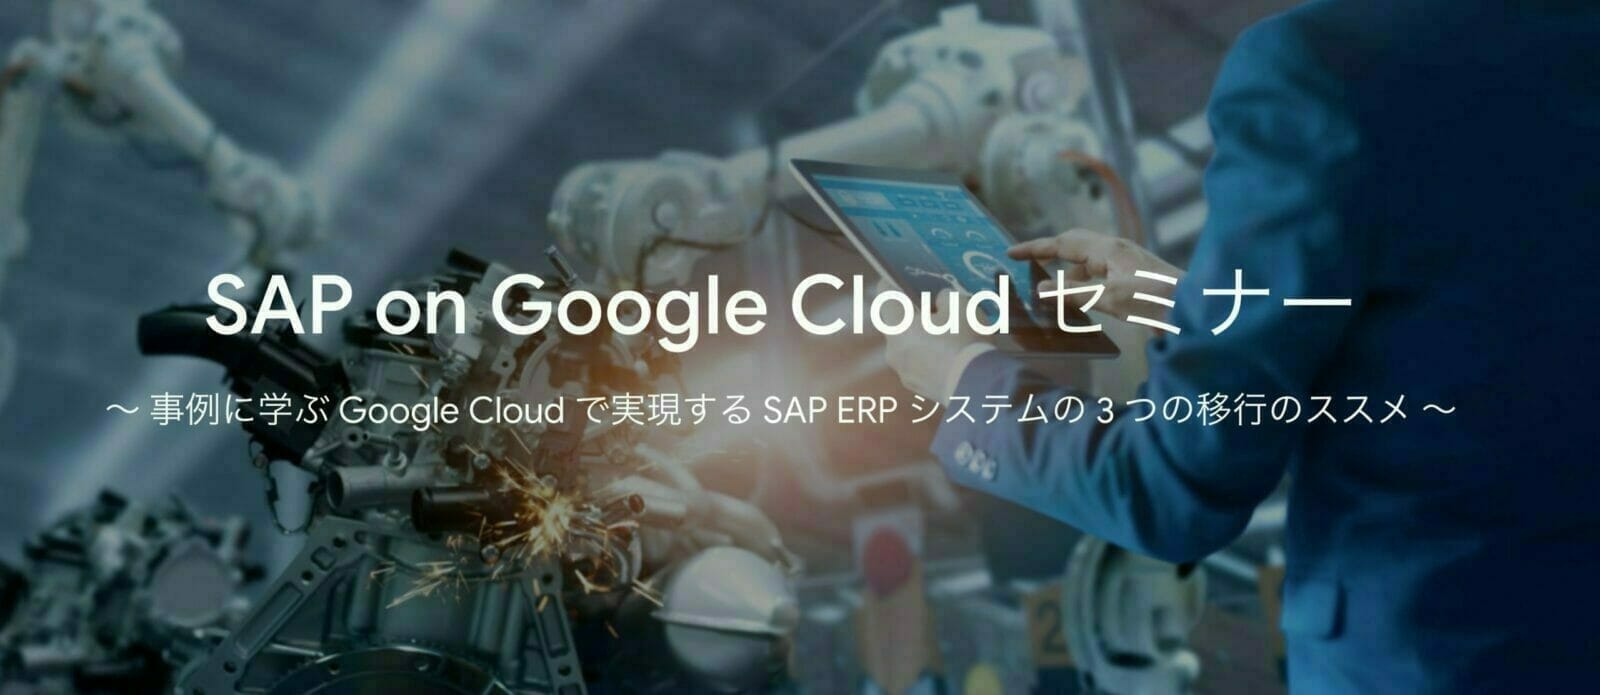 SAP on Google Cloud セミナー